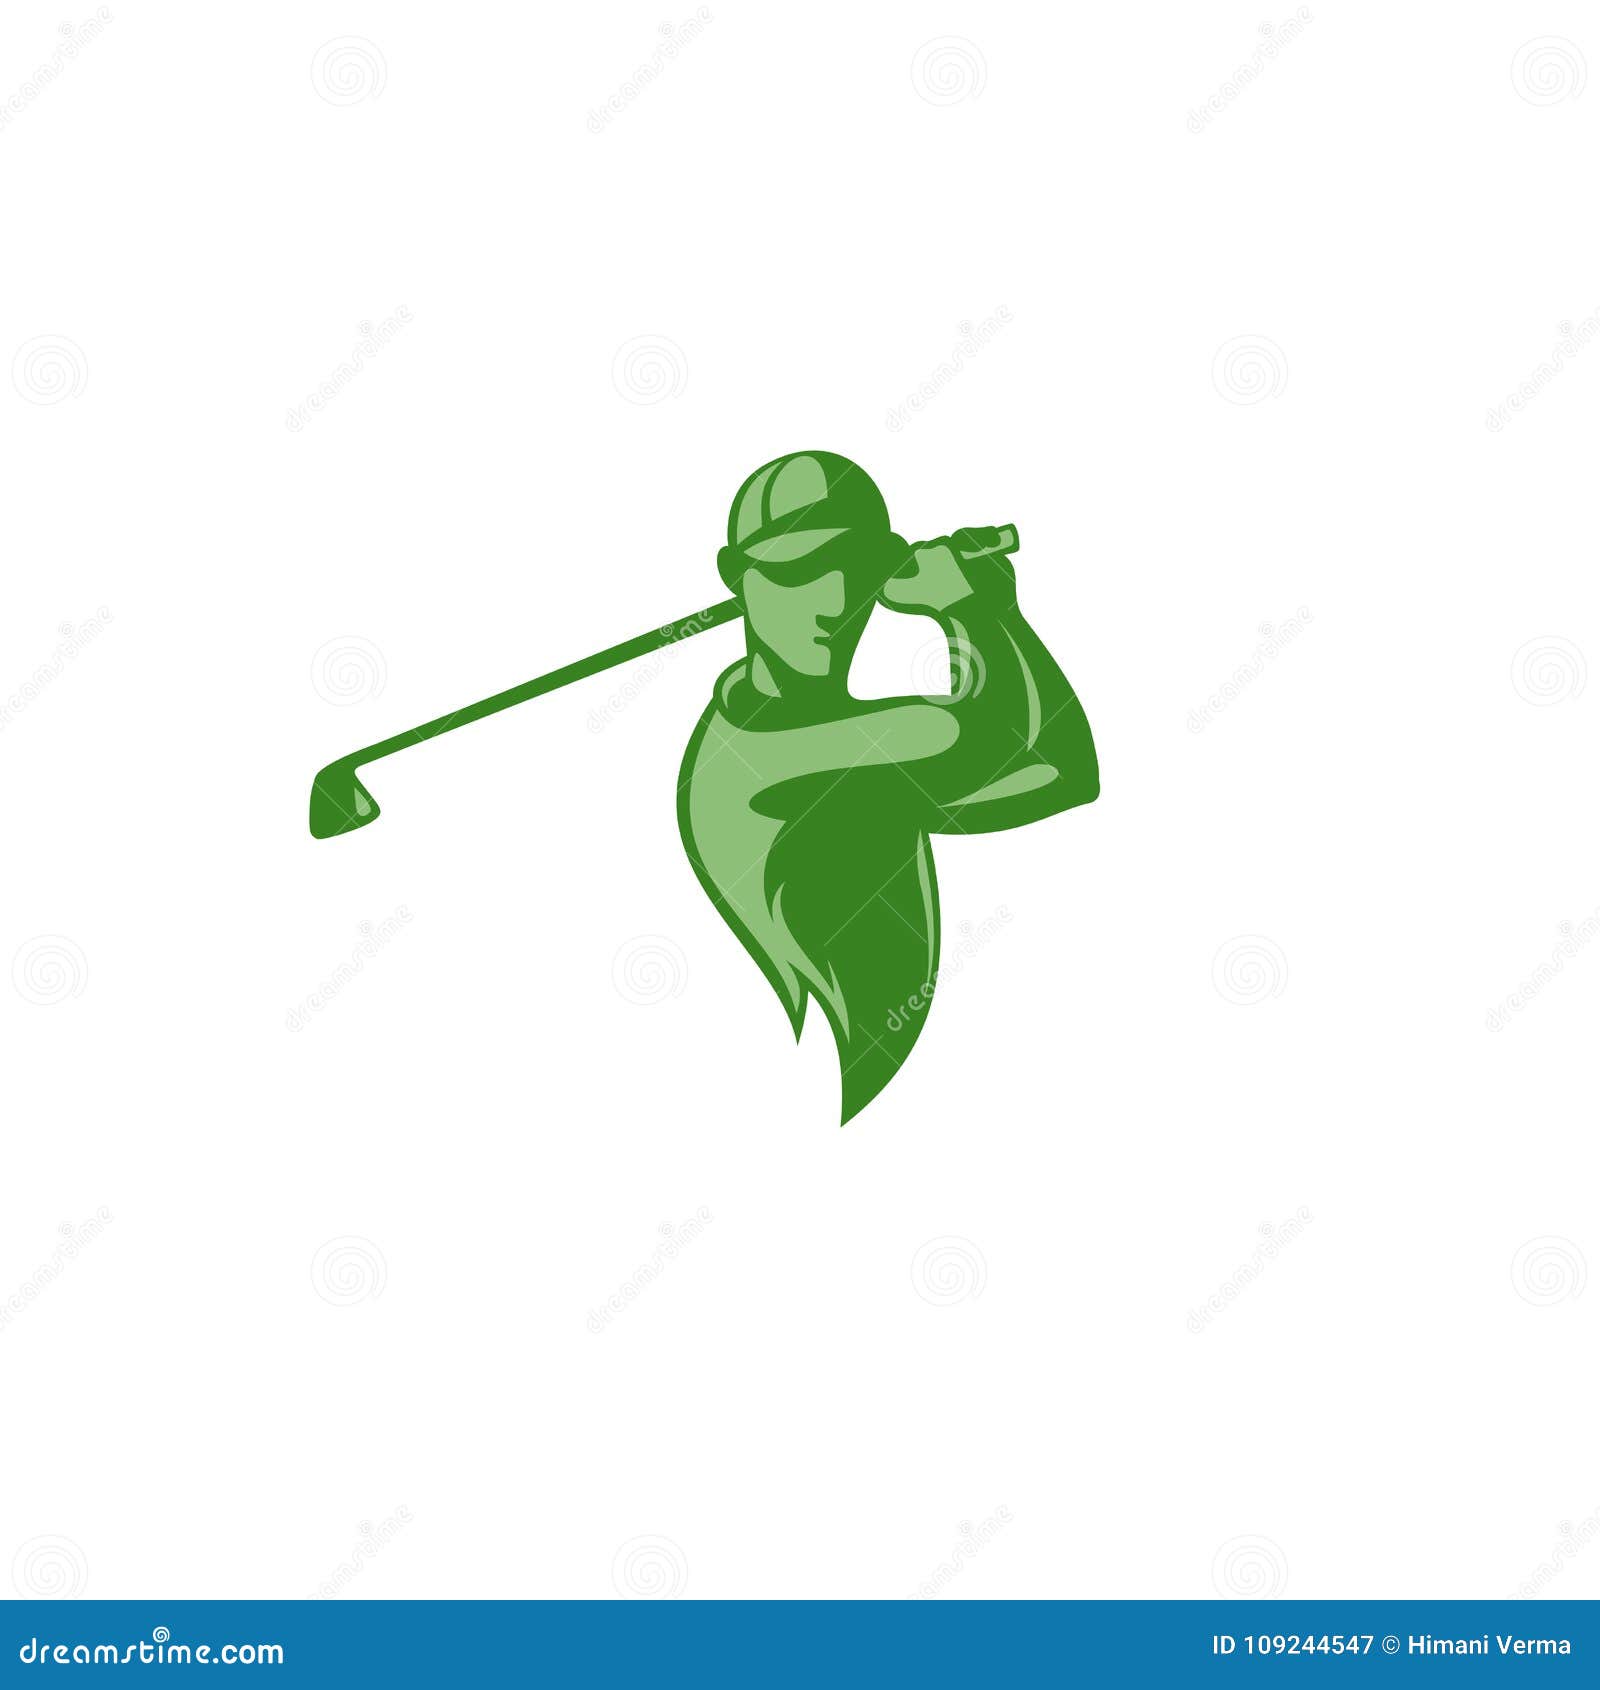 Minimal Logo of Green Golf Player Vector Illustration. Stock Vector ...